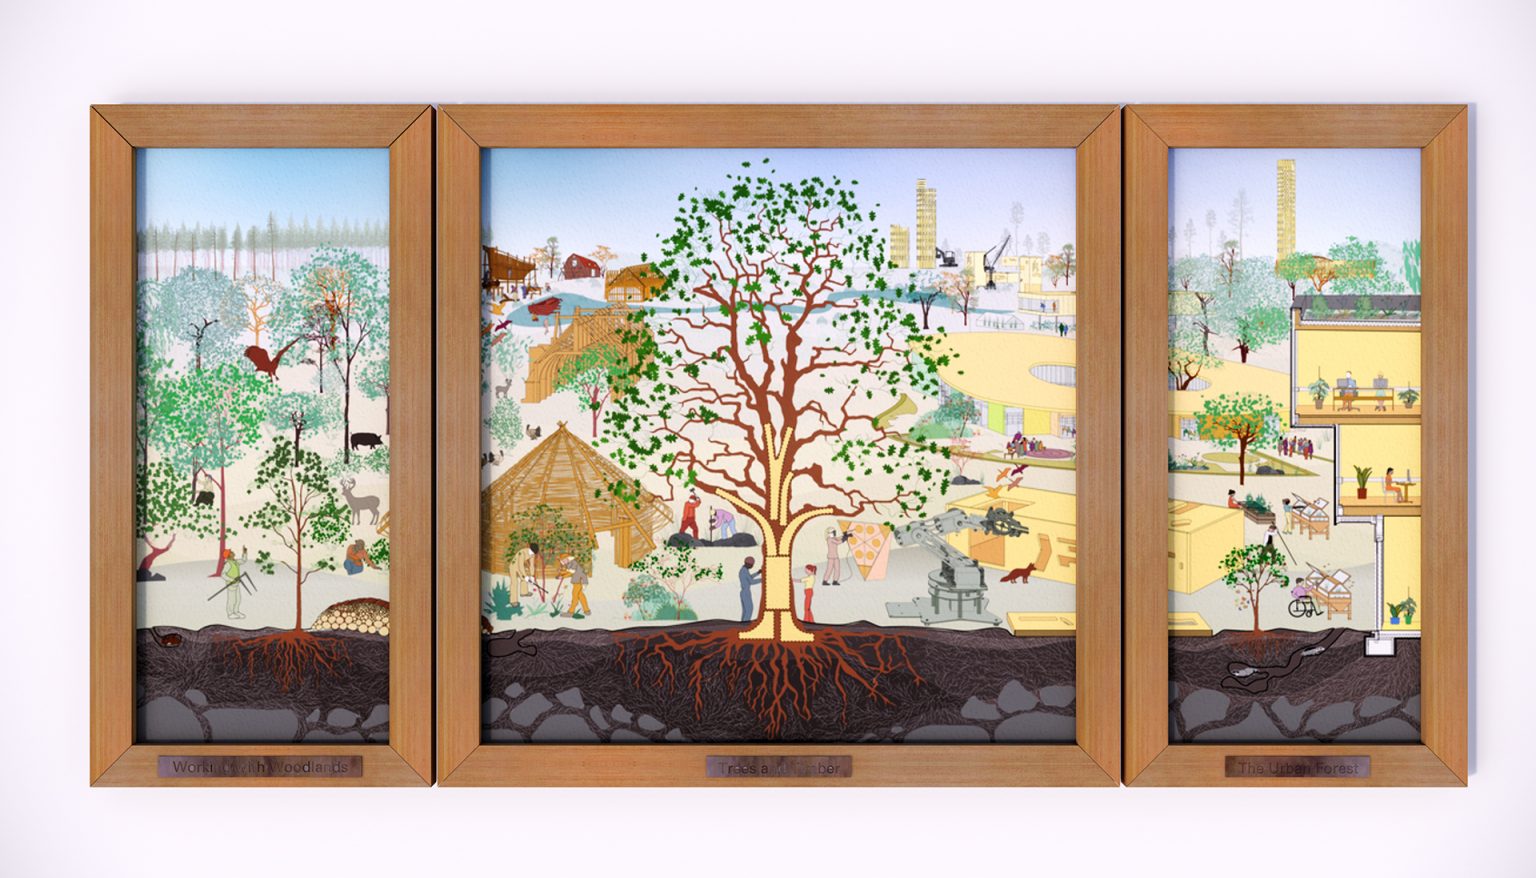 Treeptych - dRMM original artwork exhibited in Royal Academy Summer Exhibition